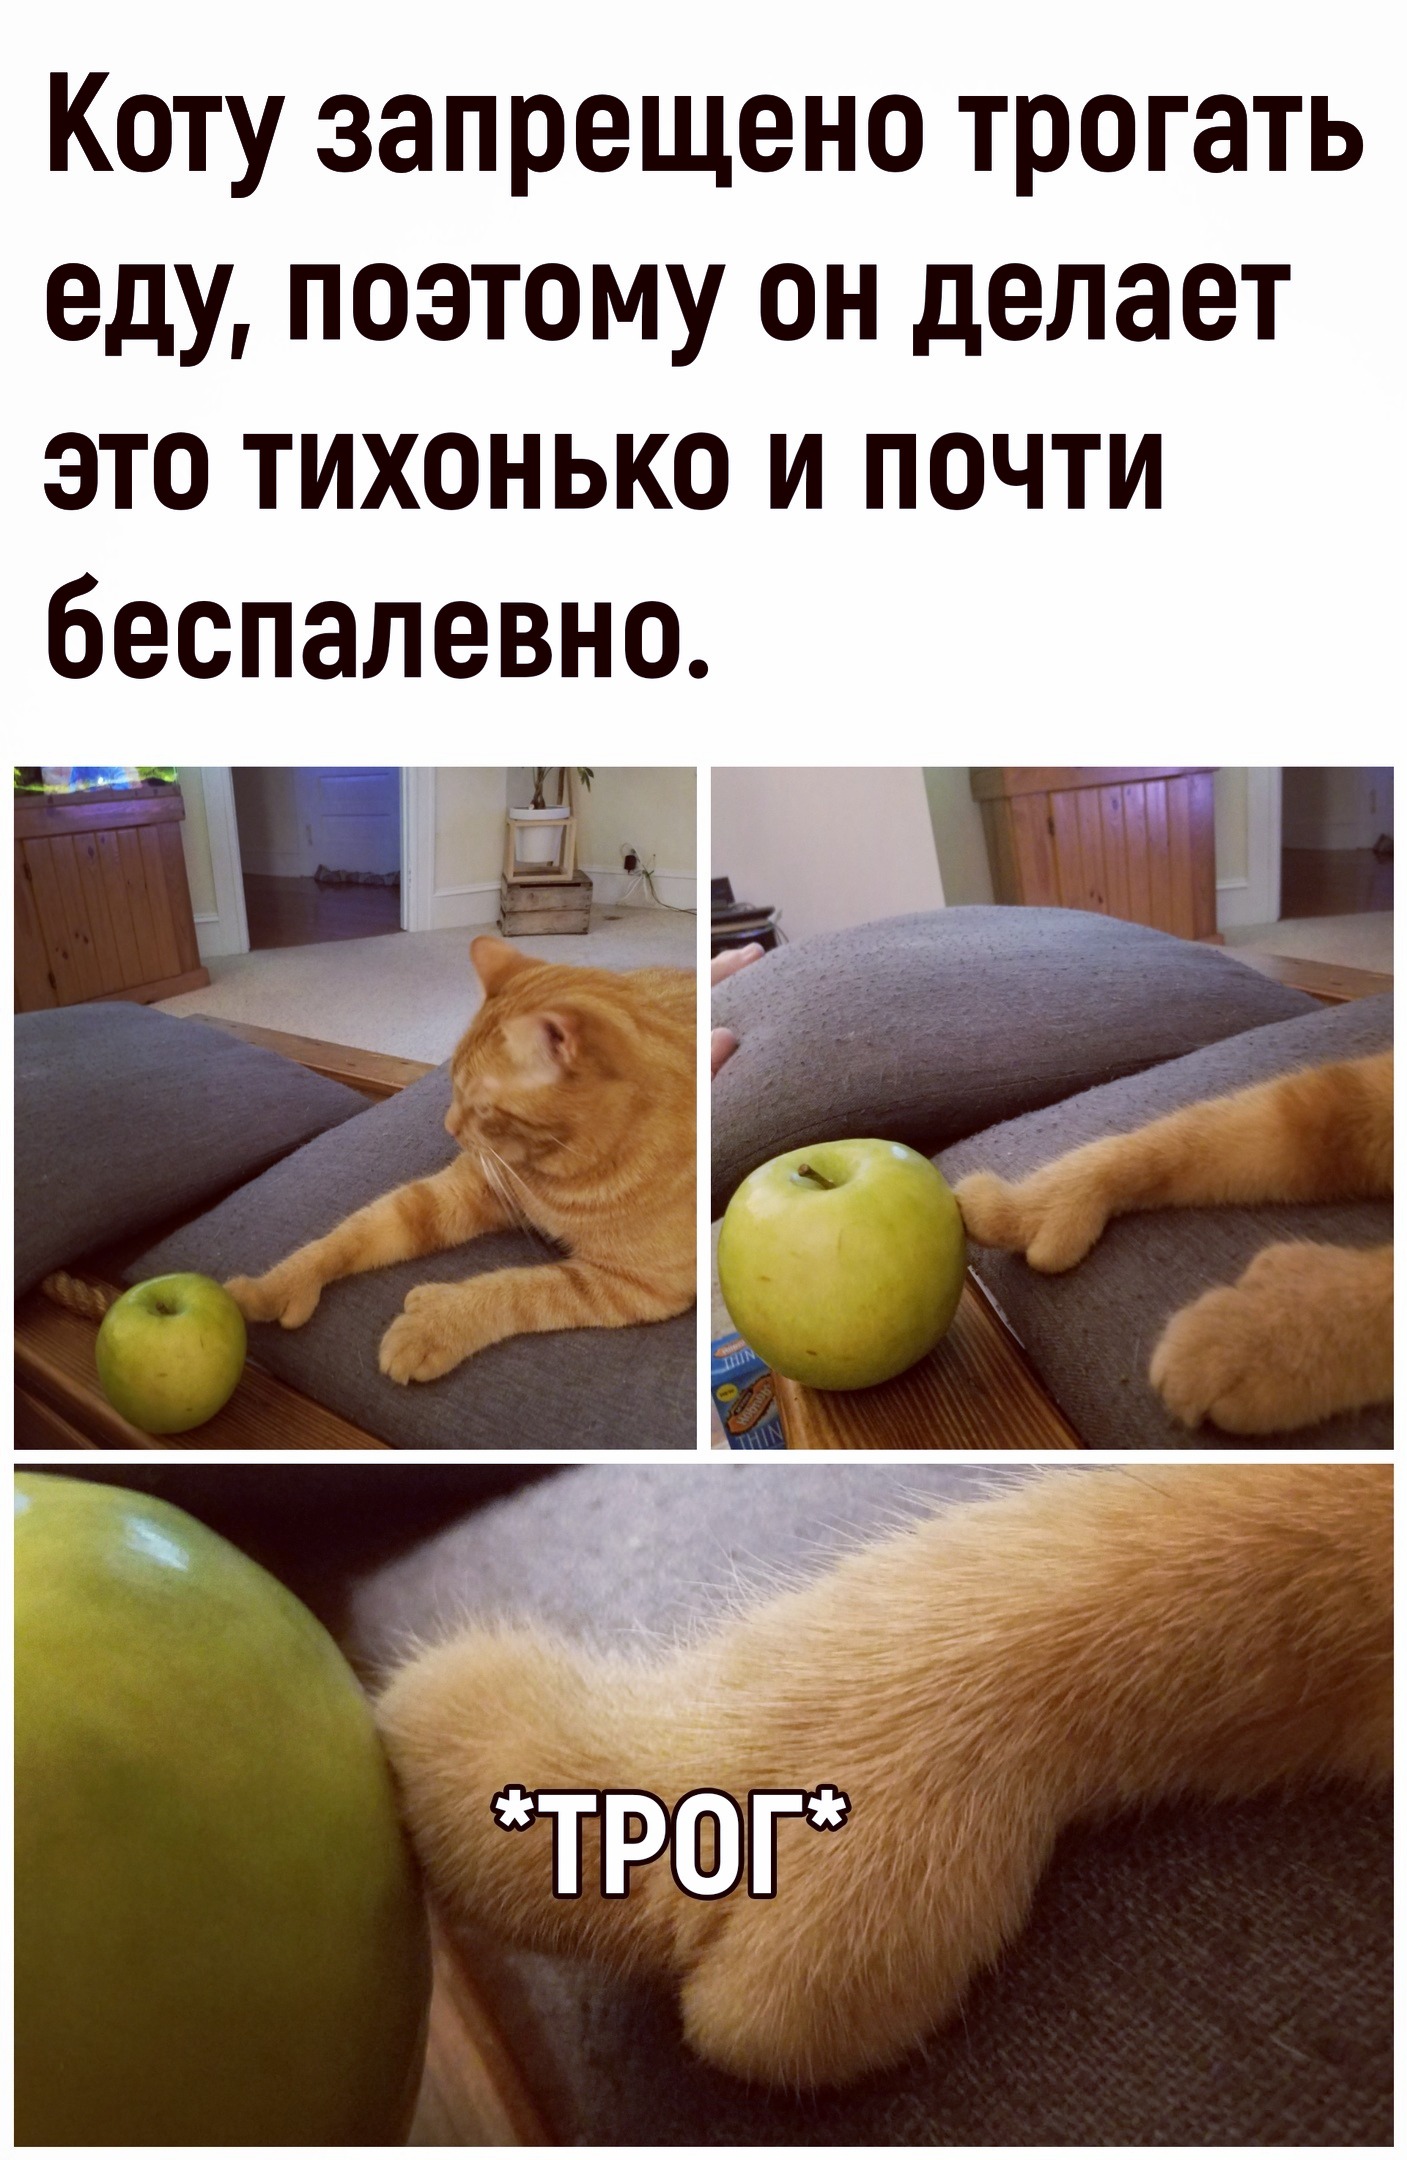 Разрешала лапать. Котики для поднятия настроения. Мемы с котами и яблоками. Коснулся кота. Смешные мемы для поднятия настроения.